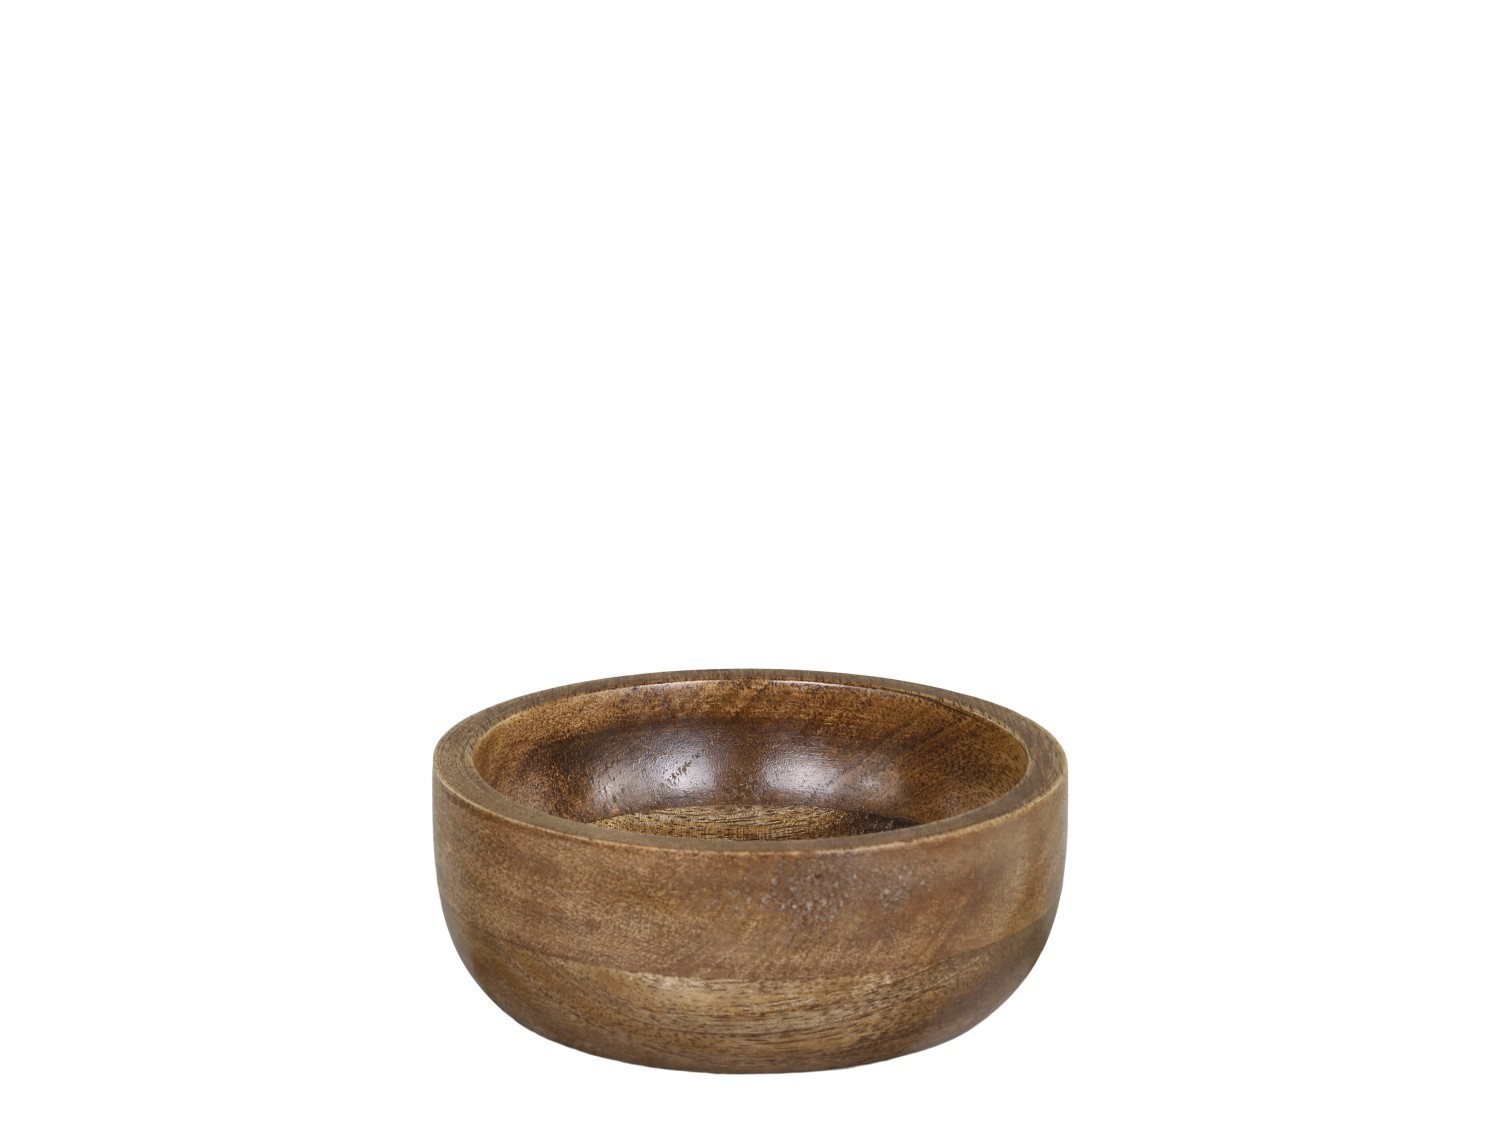 Dřevěná servírovací miska z mangového dřeva Tours Bowl - Ø 12*5 cm/ 250ml Chic Antique